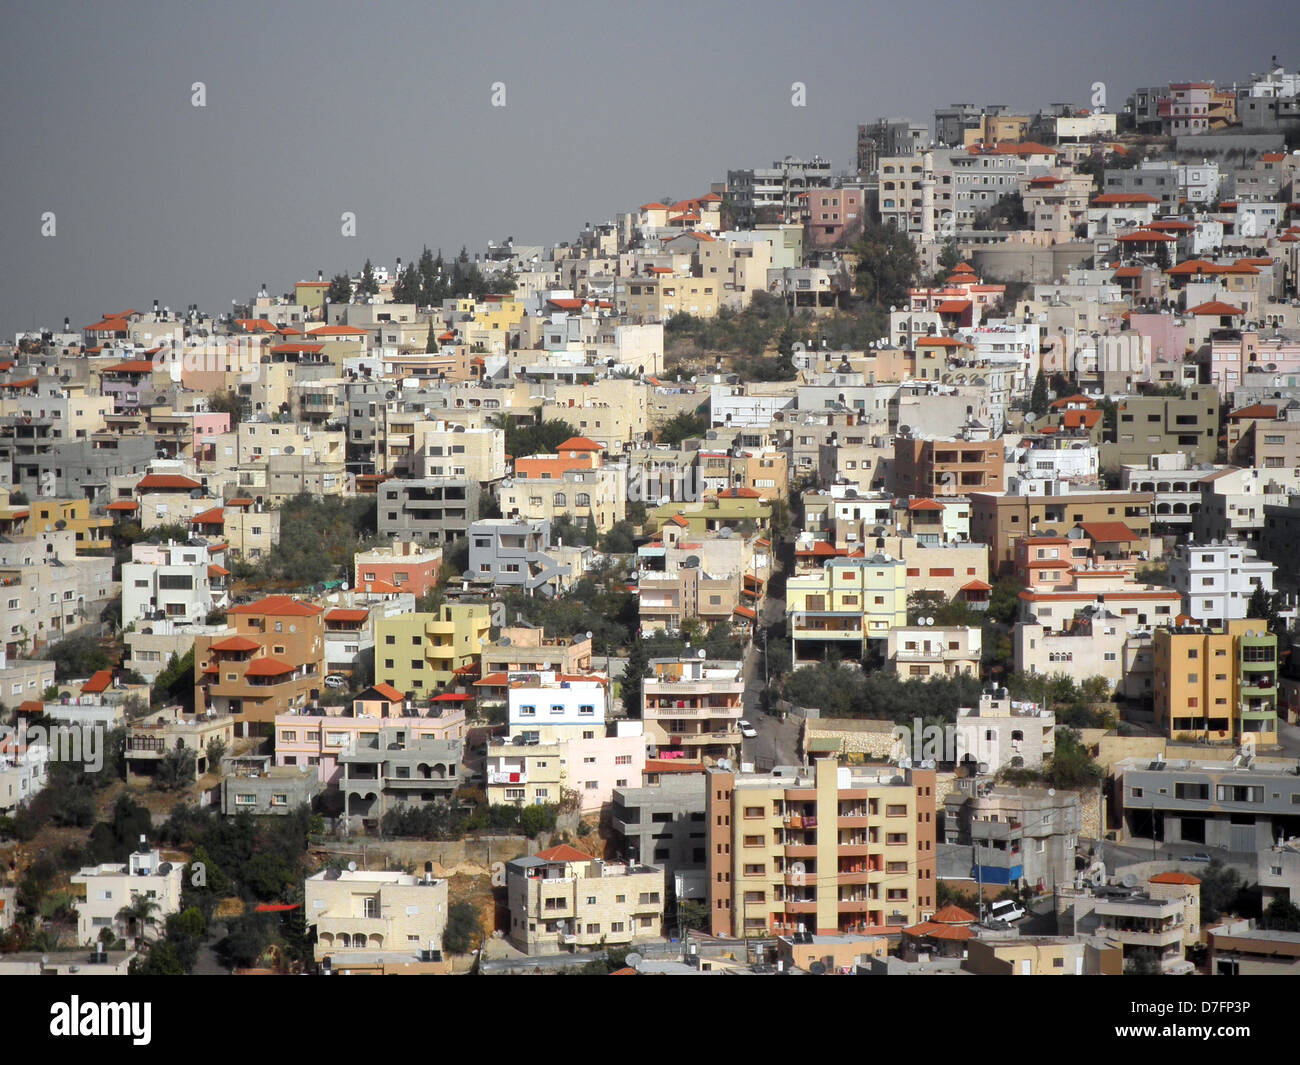 Arab town of Um El Fahem in Wadi Ara, Israel Stock Photo